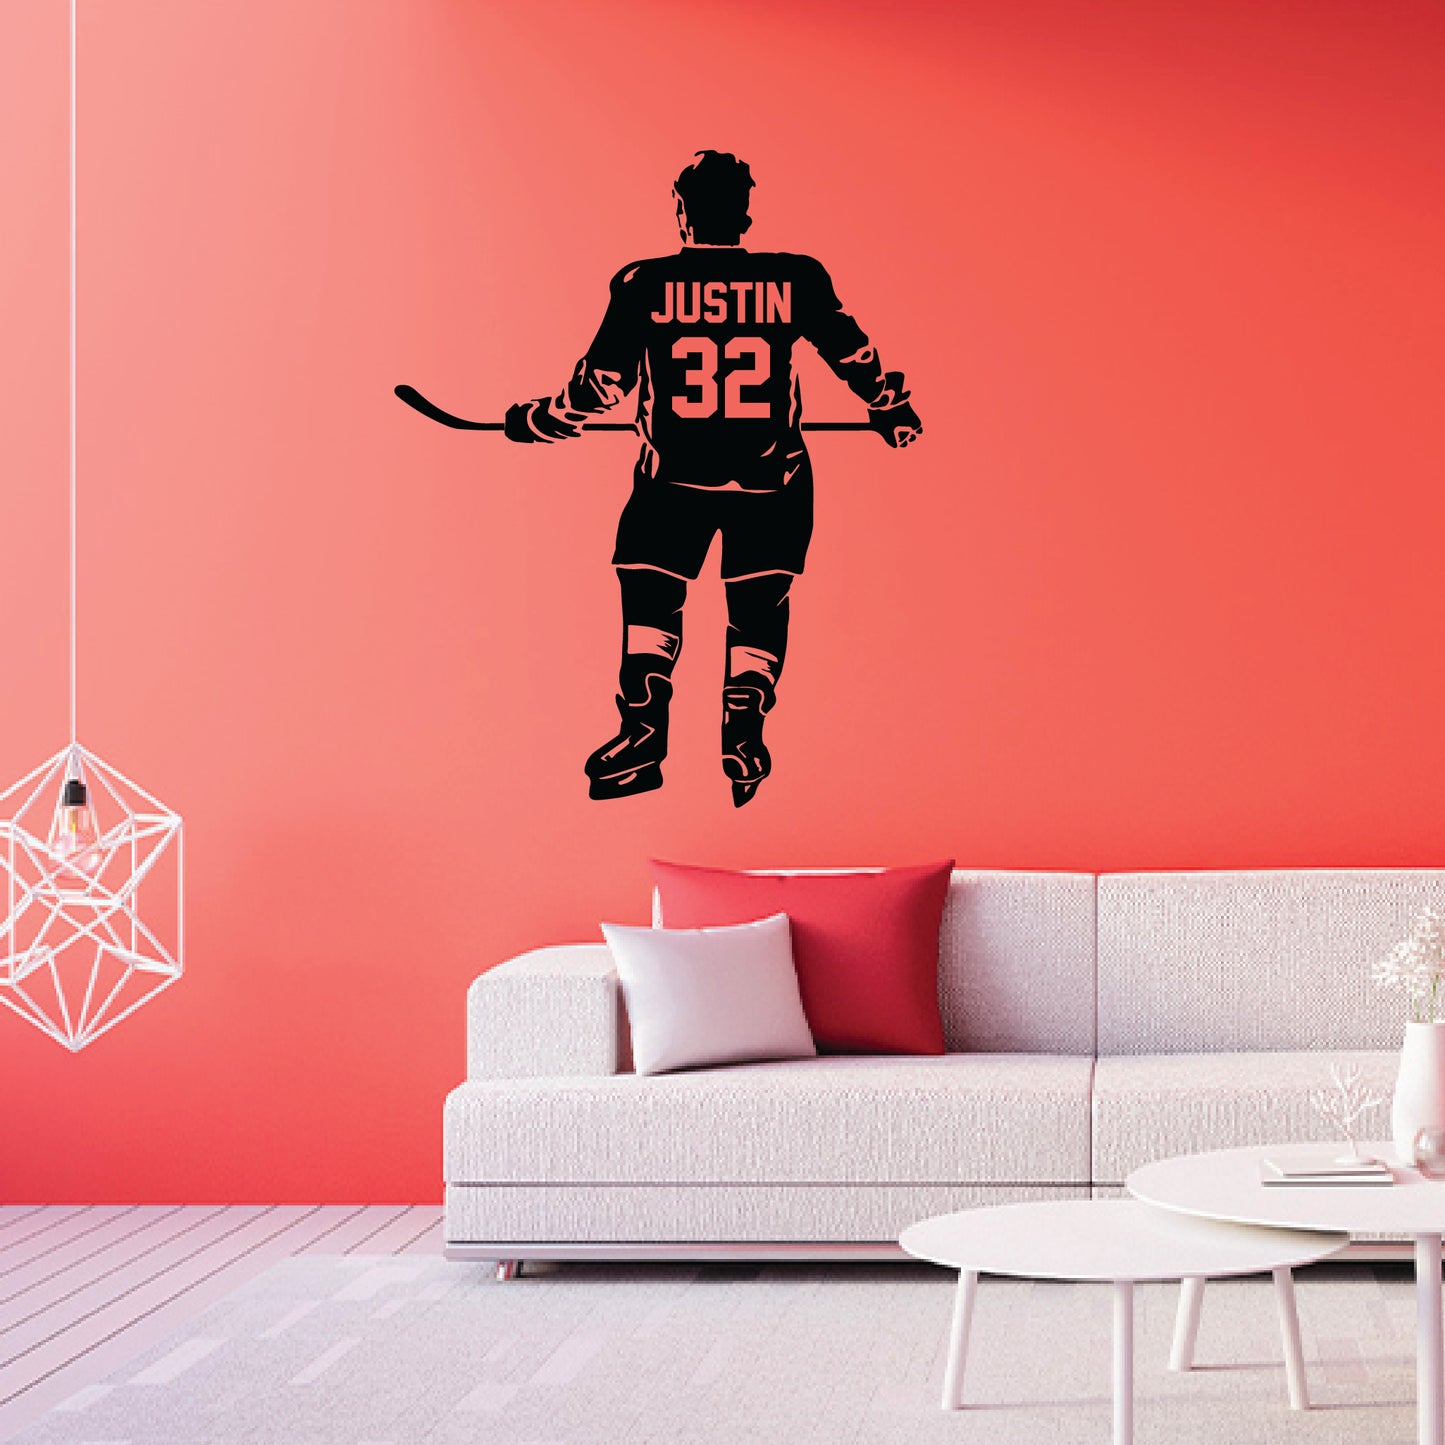 hockey-room-decor